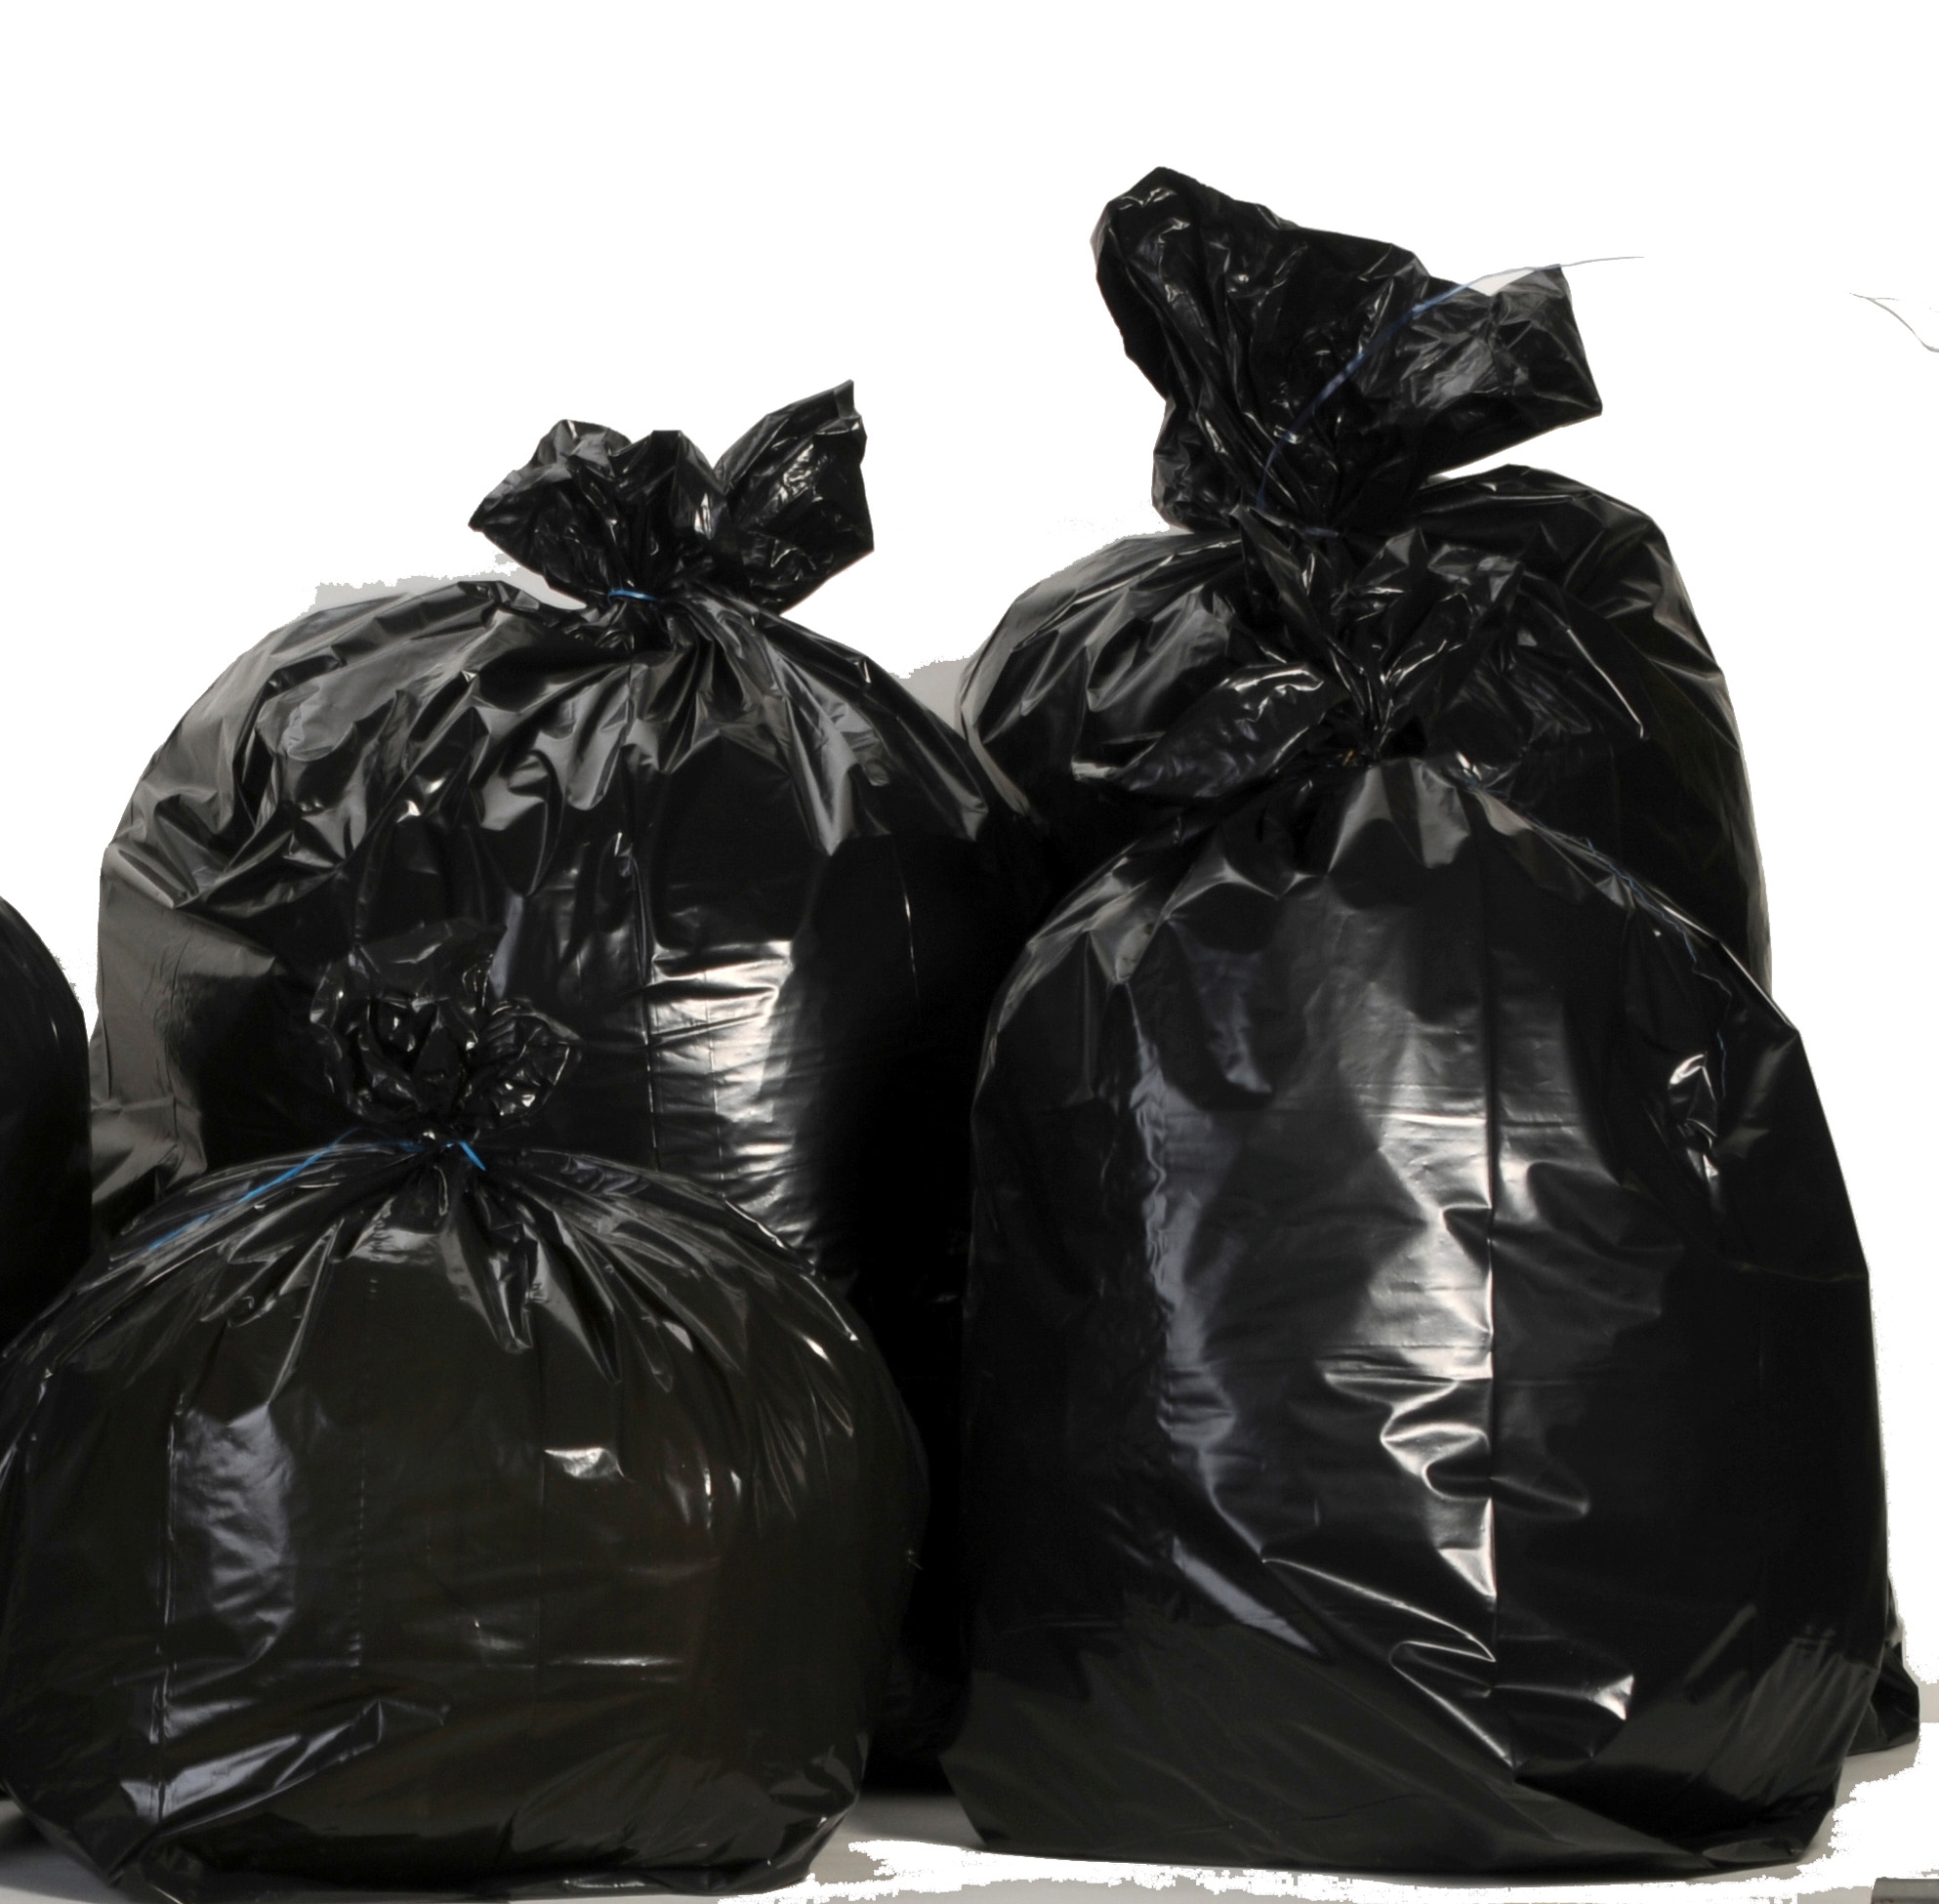 Boîte de 500 sacs poubelles traditionnels 30 litres renforcés Noir